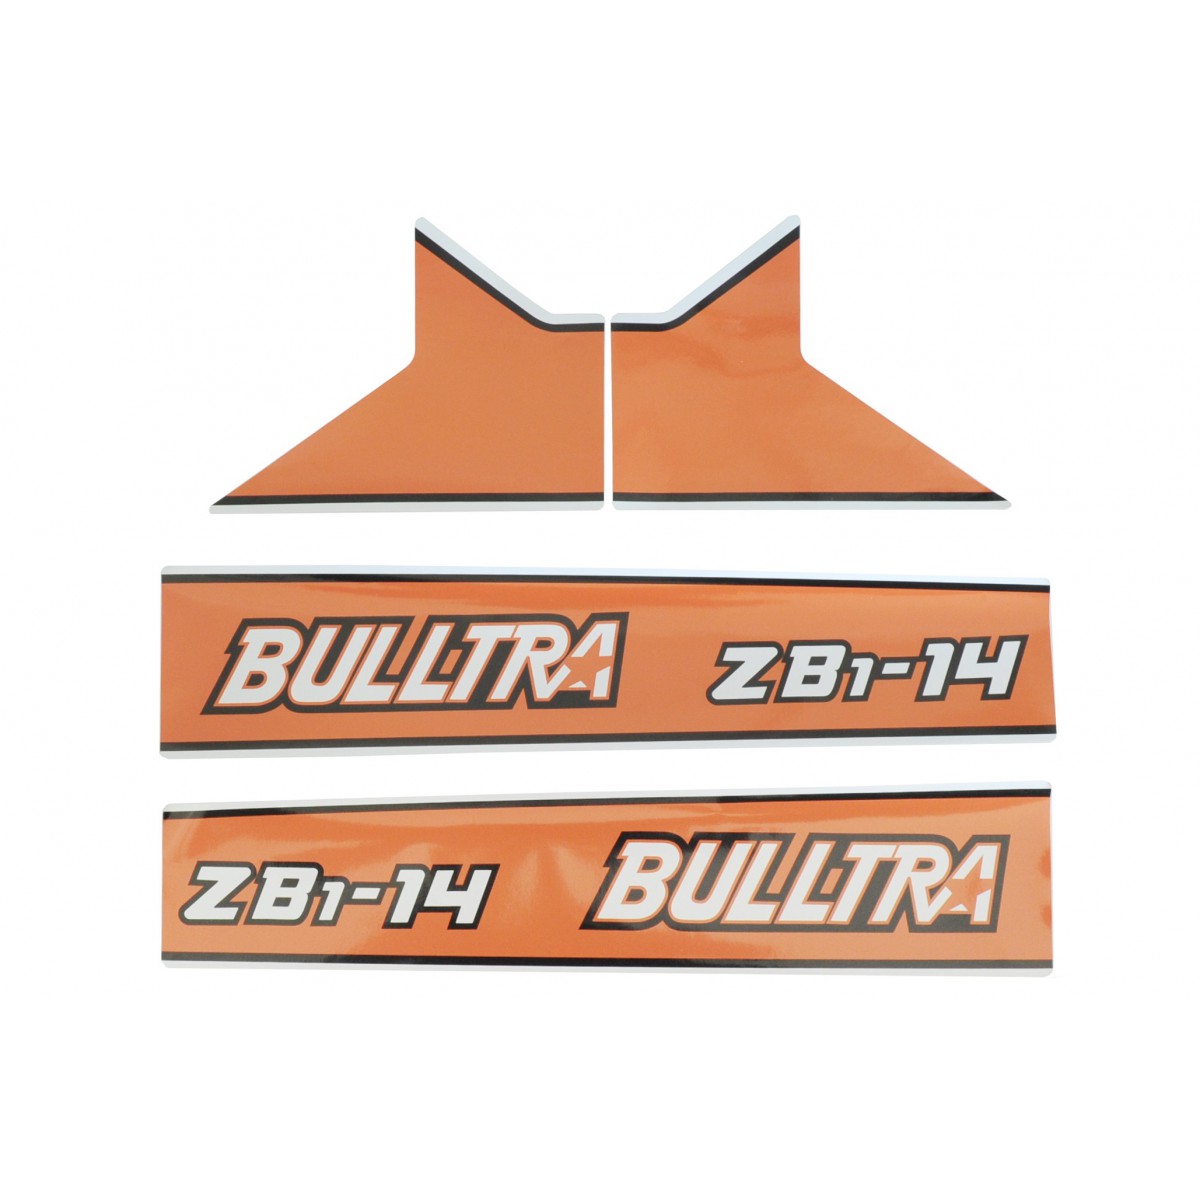 Nálepky Kubota Bulltra B1-14, ZB1-14